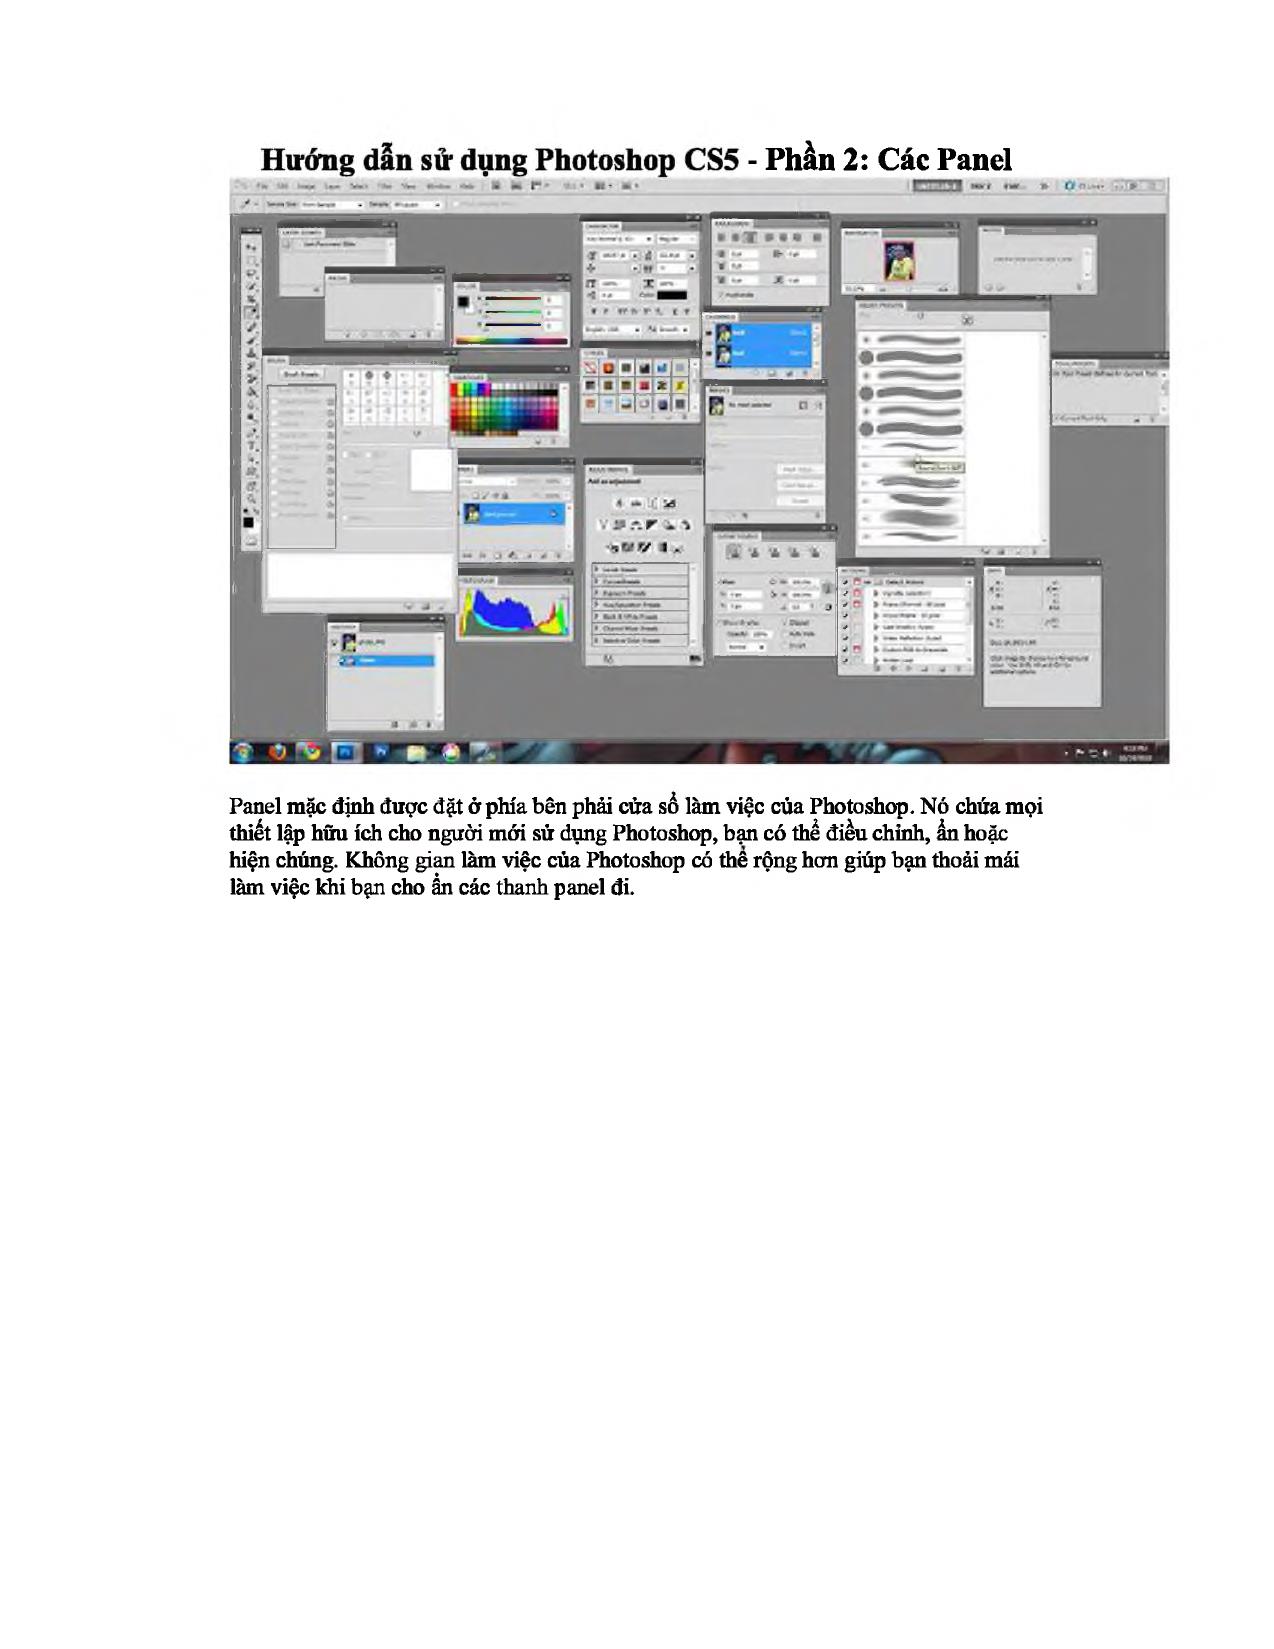 Hướng dẫn sử dụng Photoshop CS5 - Phần 2: Các Panel trang 1